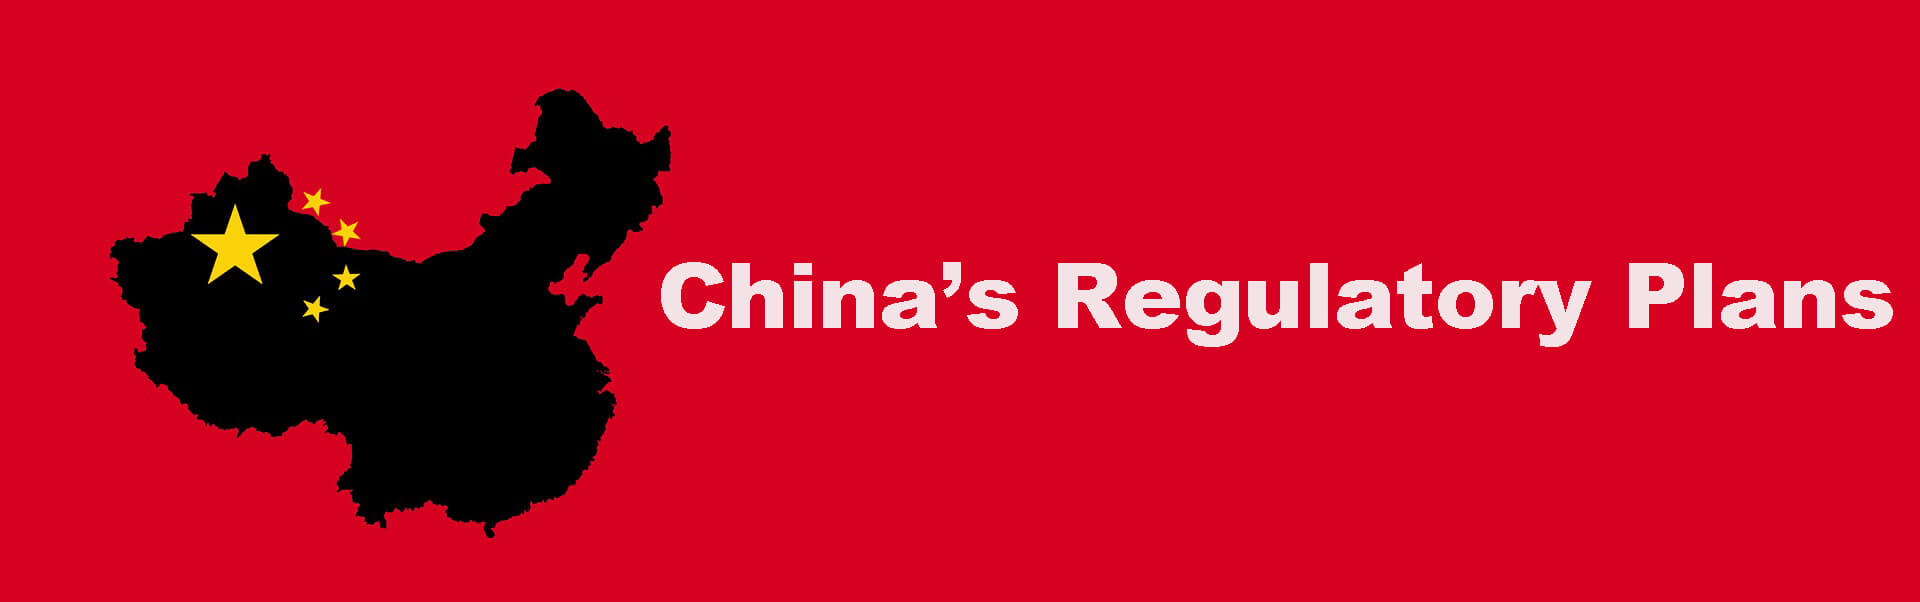 China’s Regulatory Plans (1)